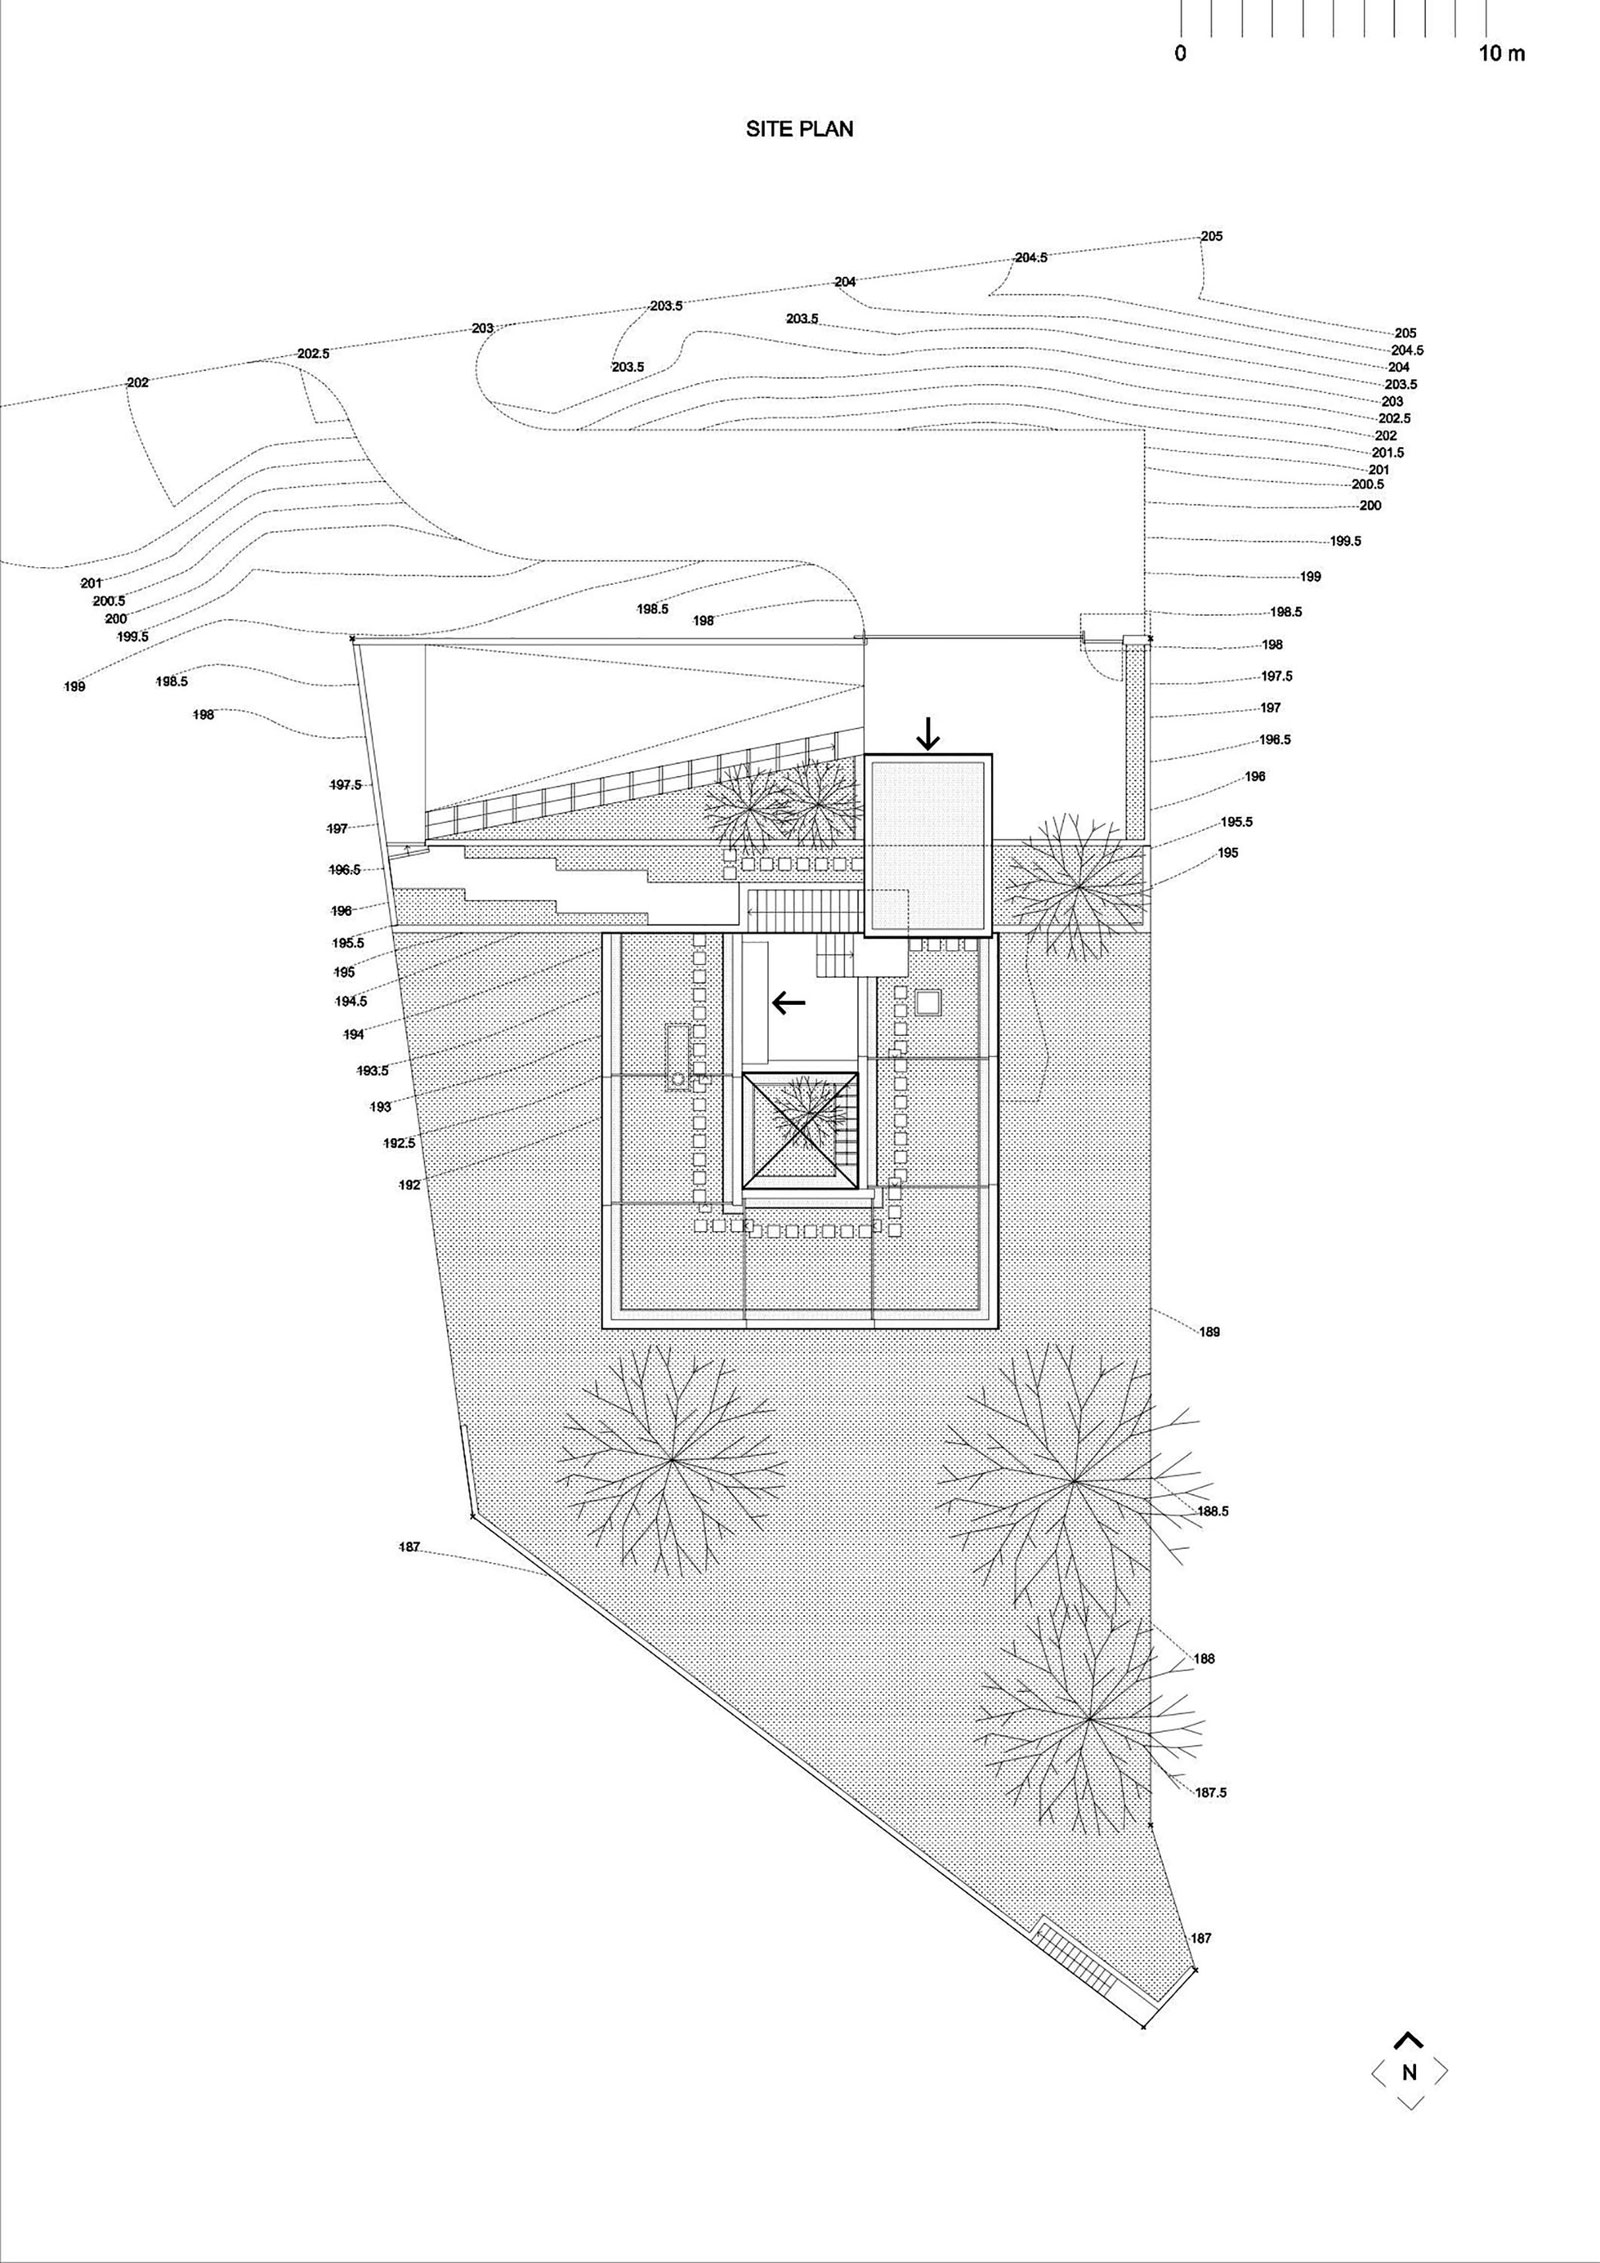 Эффектная спиральная структура резиденци по проекту петара мишковича и ваньи ристера